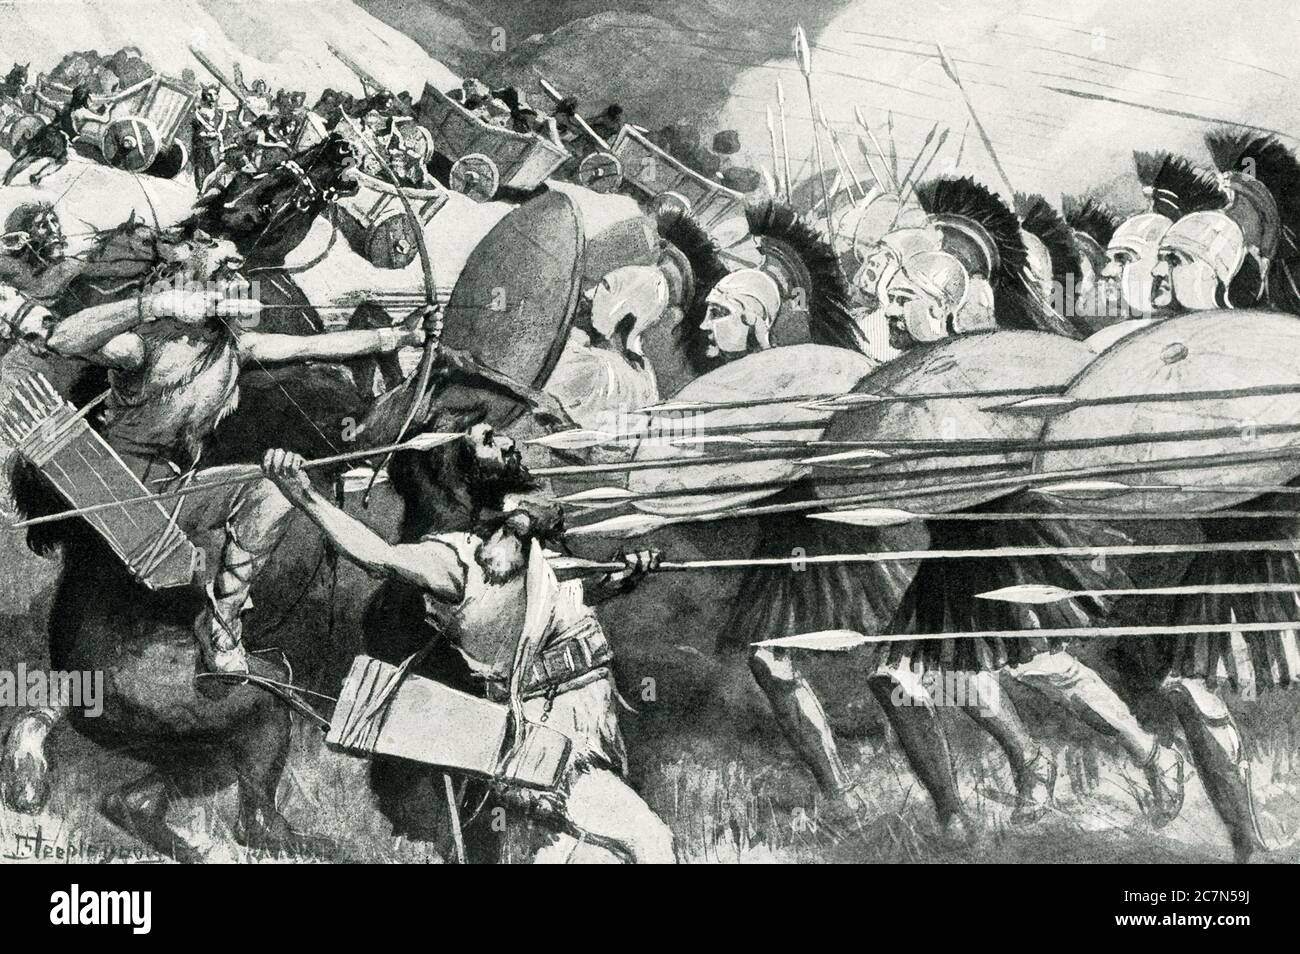 El macedonio Falanx - Batalla de los Carts (335 a.C.). La primera de las famosas victorias del joven Alejandro fue contra las tribus de montaña salvajes de Tracia. Desde las cumbres de sus pasos rocosos se rodaron por carros llenos de piedras pesadas, esperando aplastar a los macedonios trepadores y romper las filas de la temida falange. Alexander encontró el ataque de la novela al propujar a sus soldados agacharse en una masa compacta debajo de sus escudos, de modo que los carros que se lanzaban salían bastante sobre ellos sin lesiones. Luego la falange inquebrantada se encontró y derrotó a los bárbaros armados más ligeros. Foto de stock